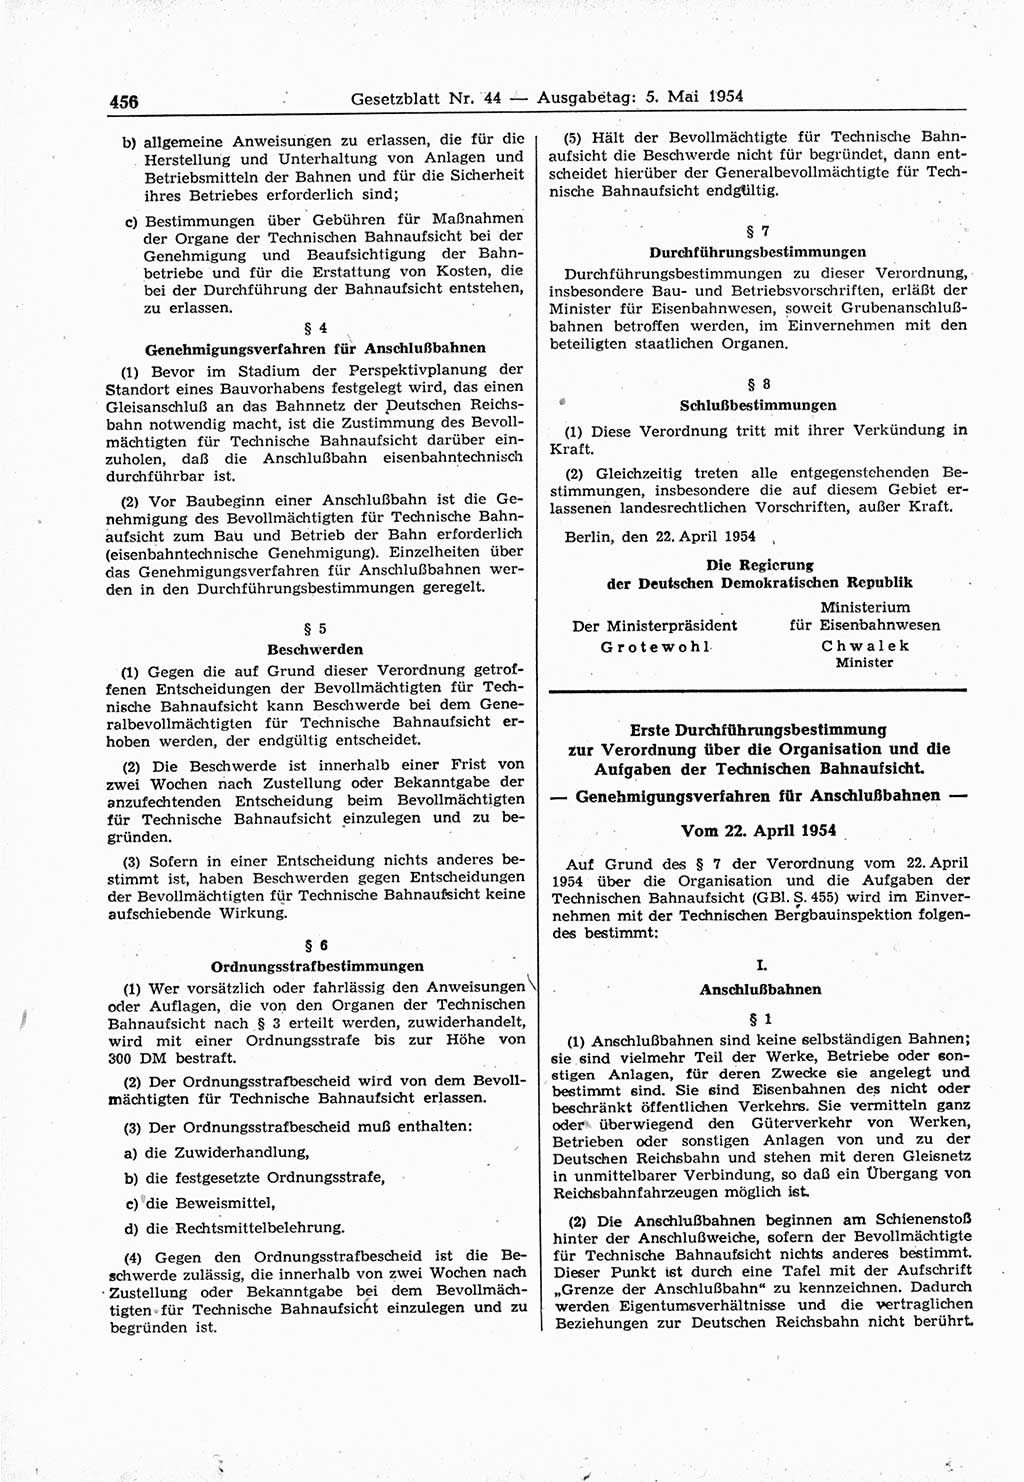 Gesetzblatt (GBl.) der Deutschen Demokratischen Republik (DDR) 1954, Seite 456 (GBl. DDR 1954, S. 456)